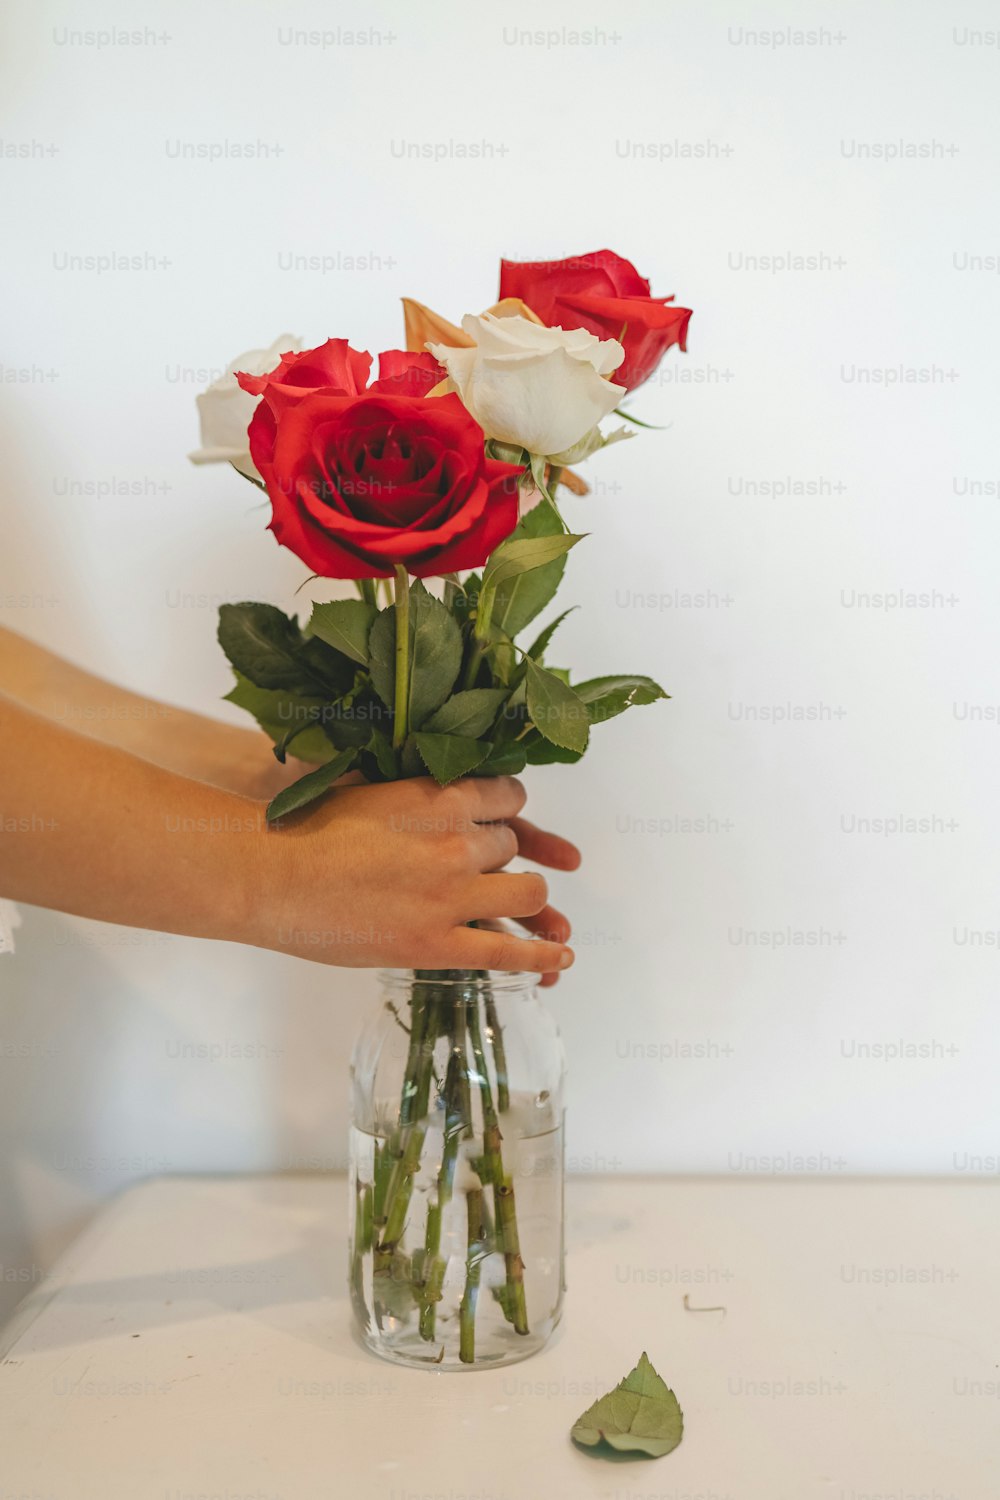 uma pessoa segurando um vaso com rosas nele